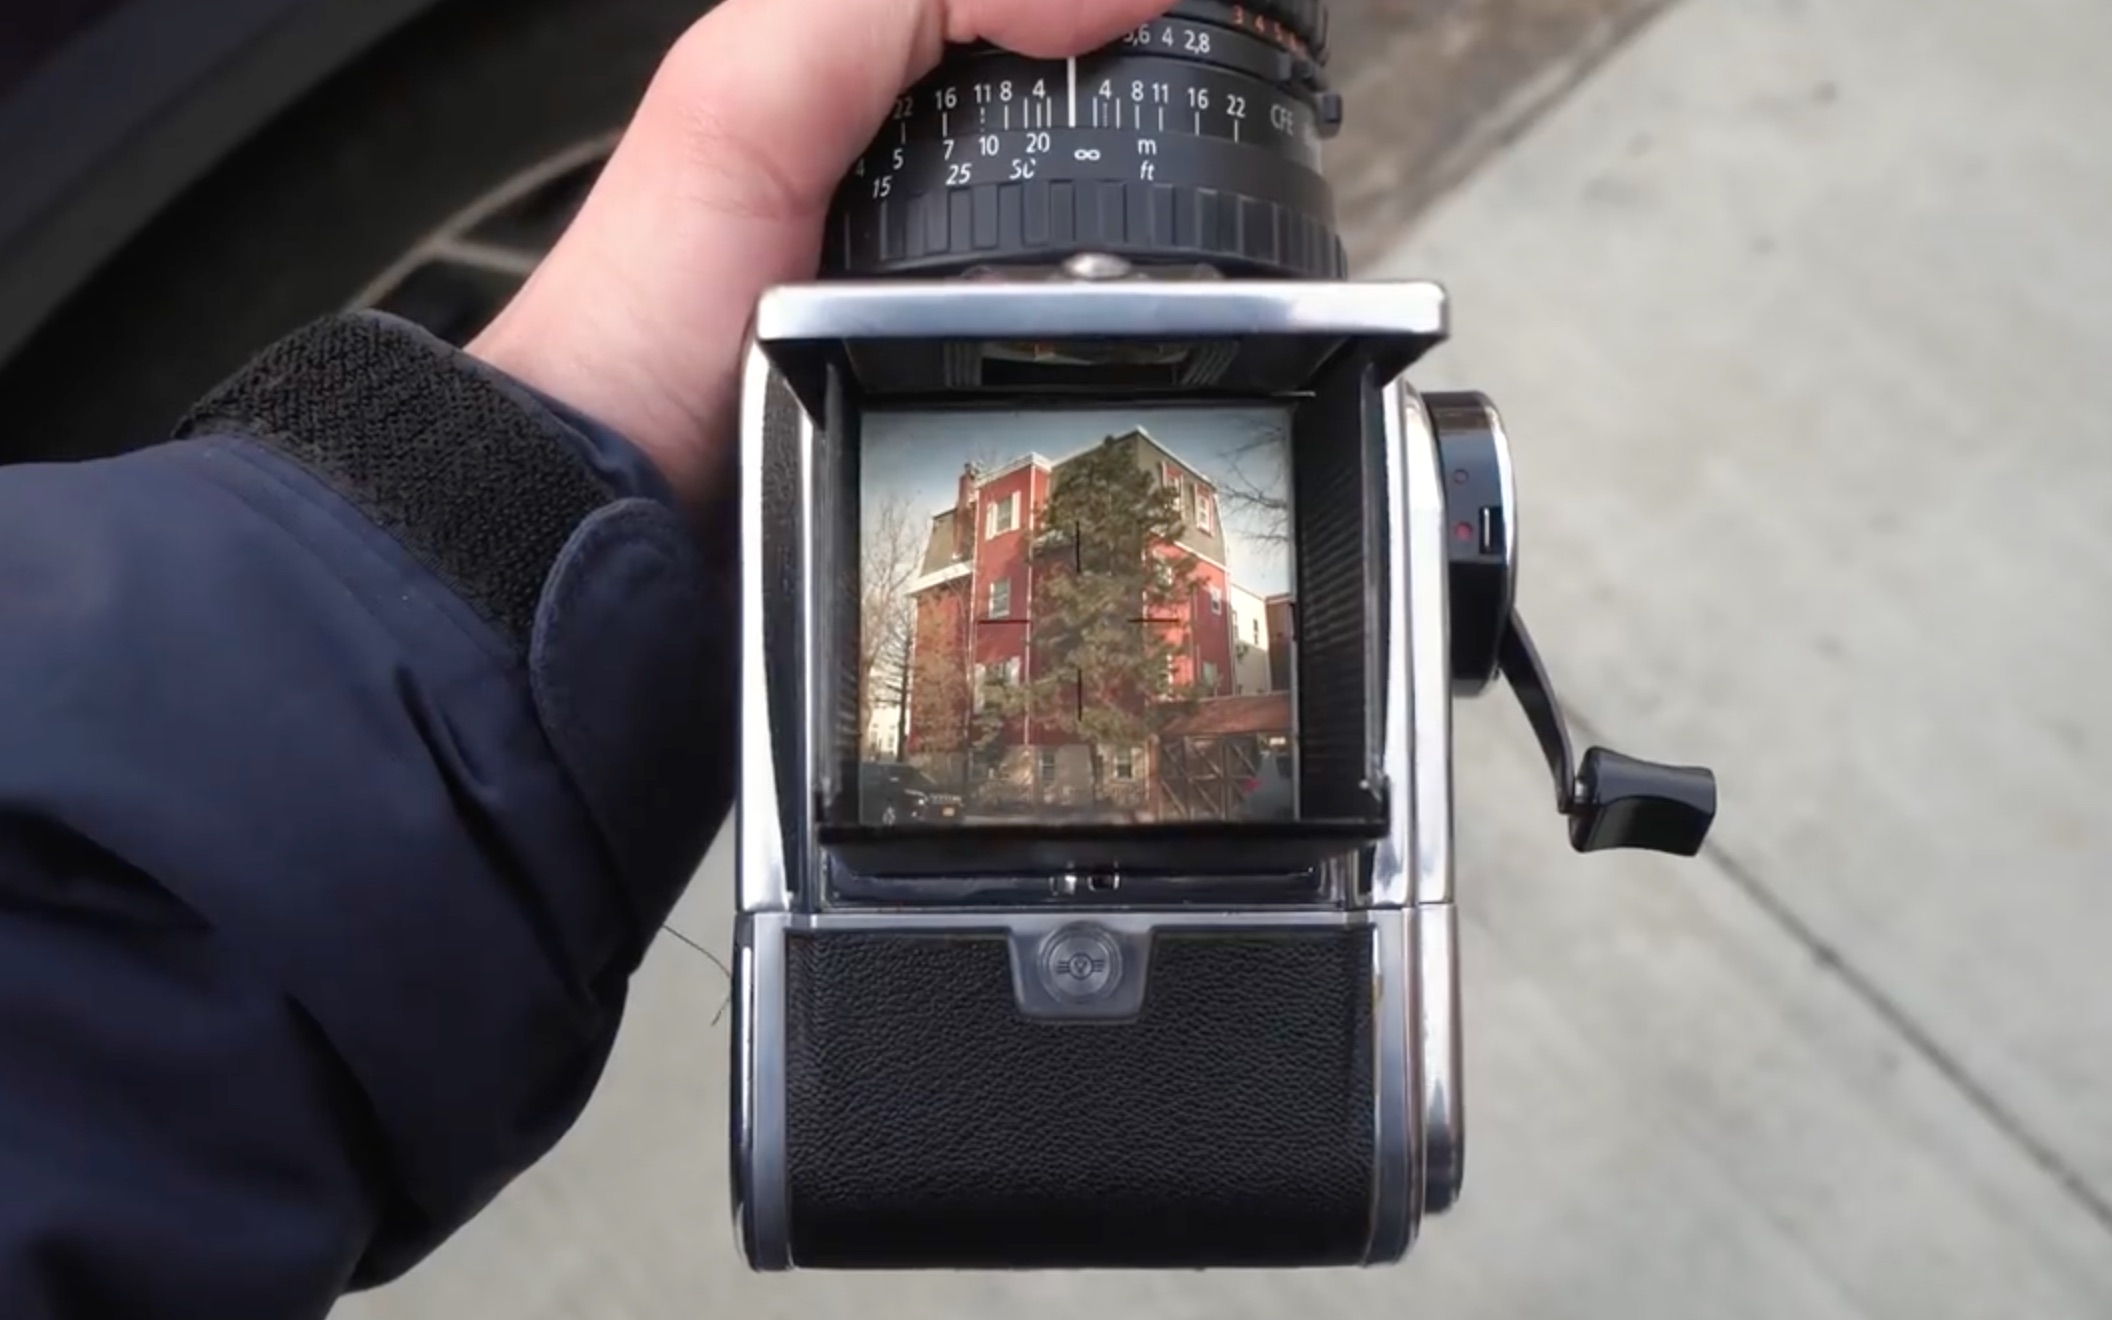 【英字】hasselblad 哈苏500cm 中画幅胶片机 街头摄影测评